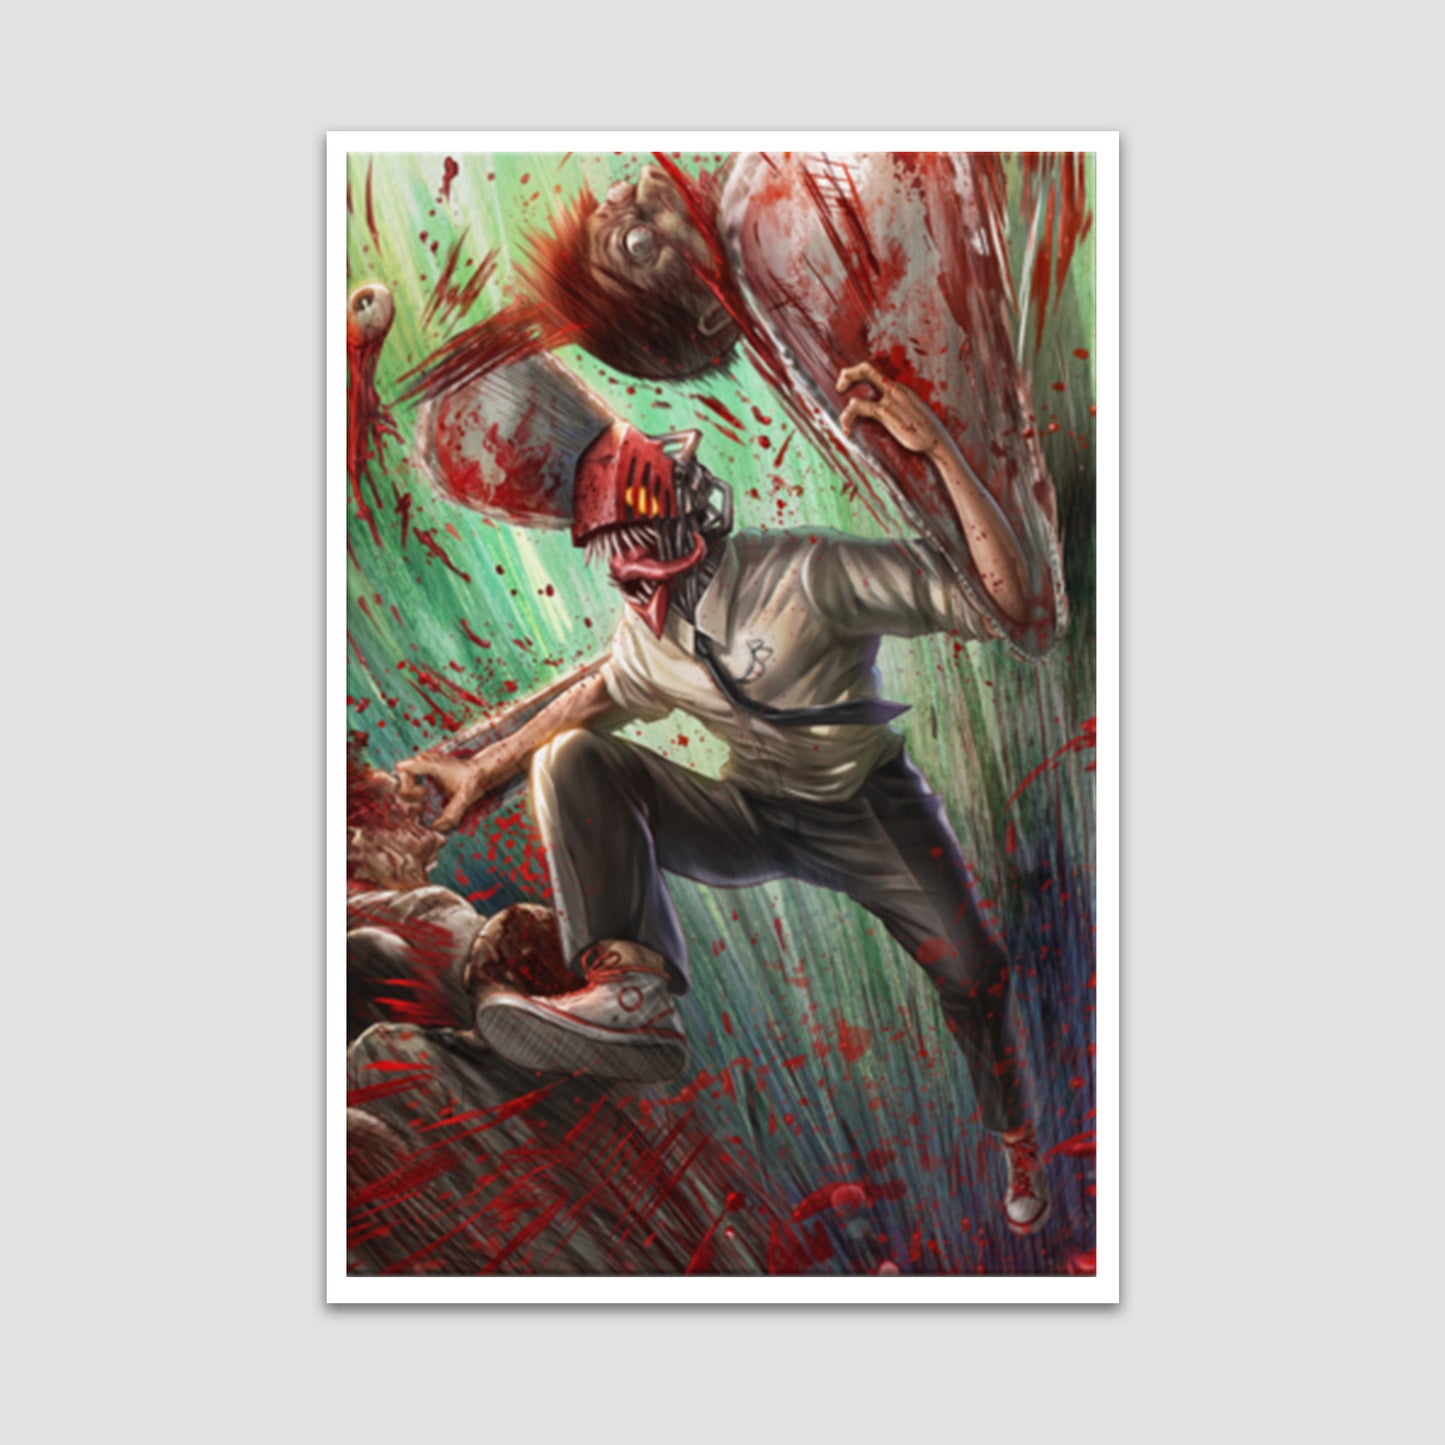 Chainsaw Man "Chainsaw Head" Premium Art Print